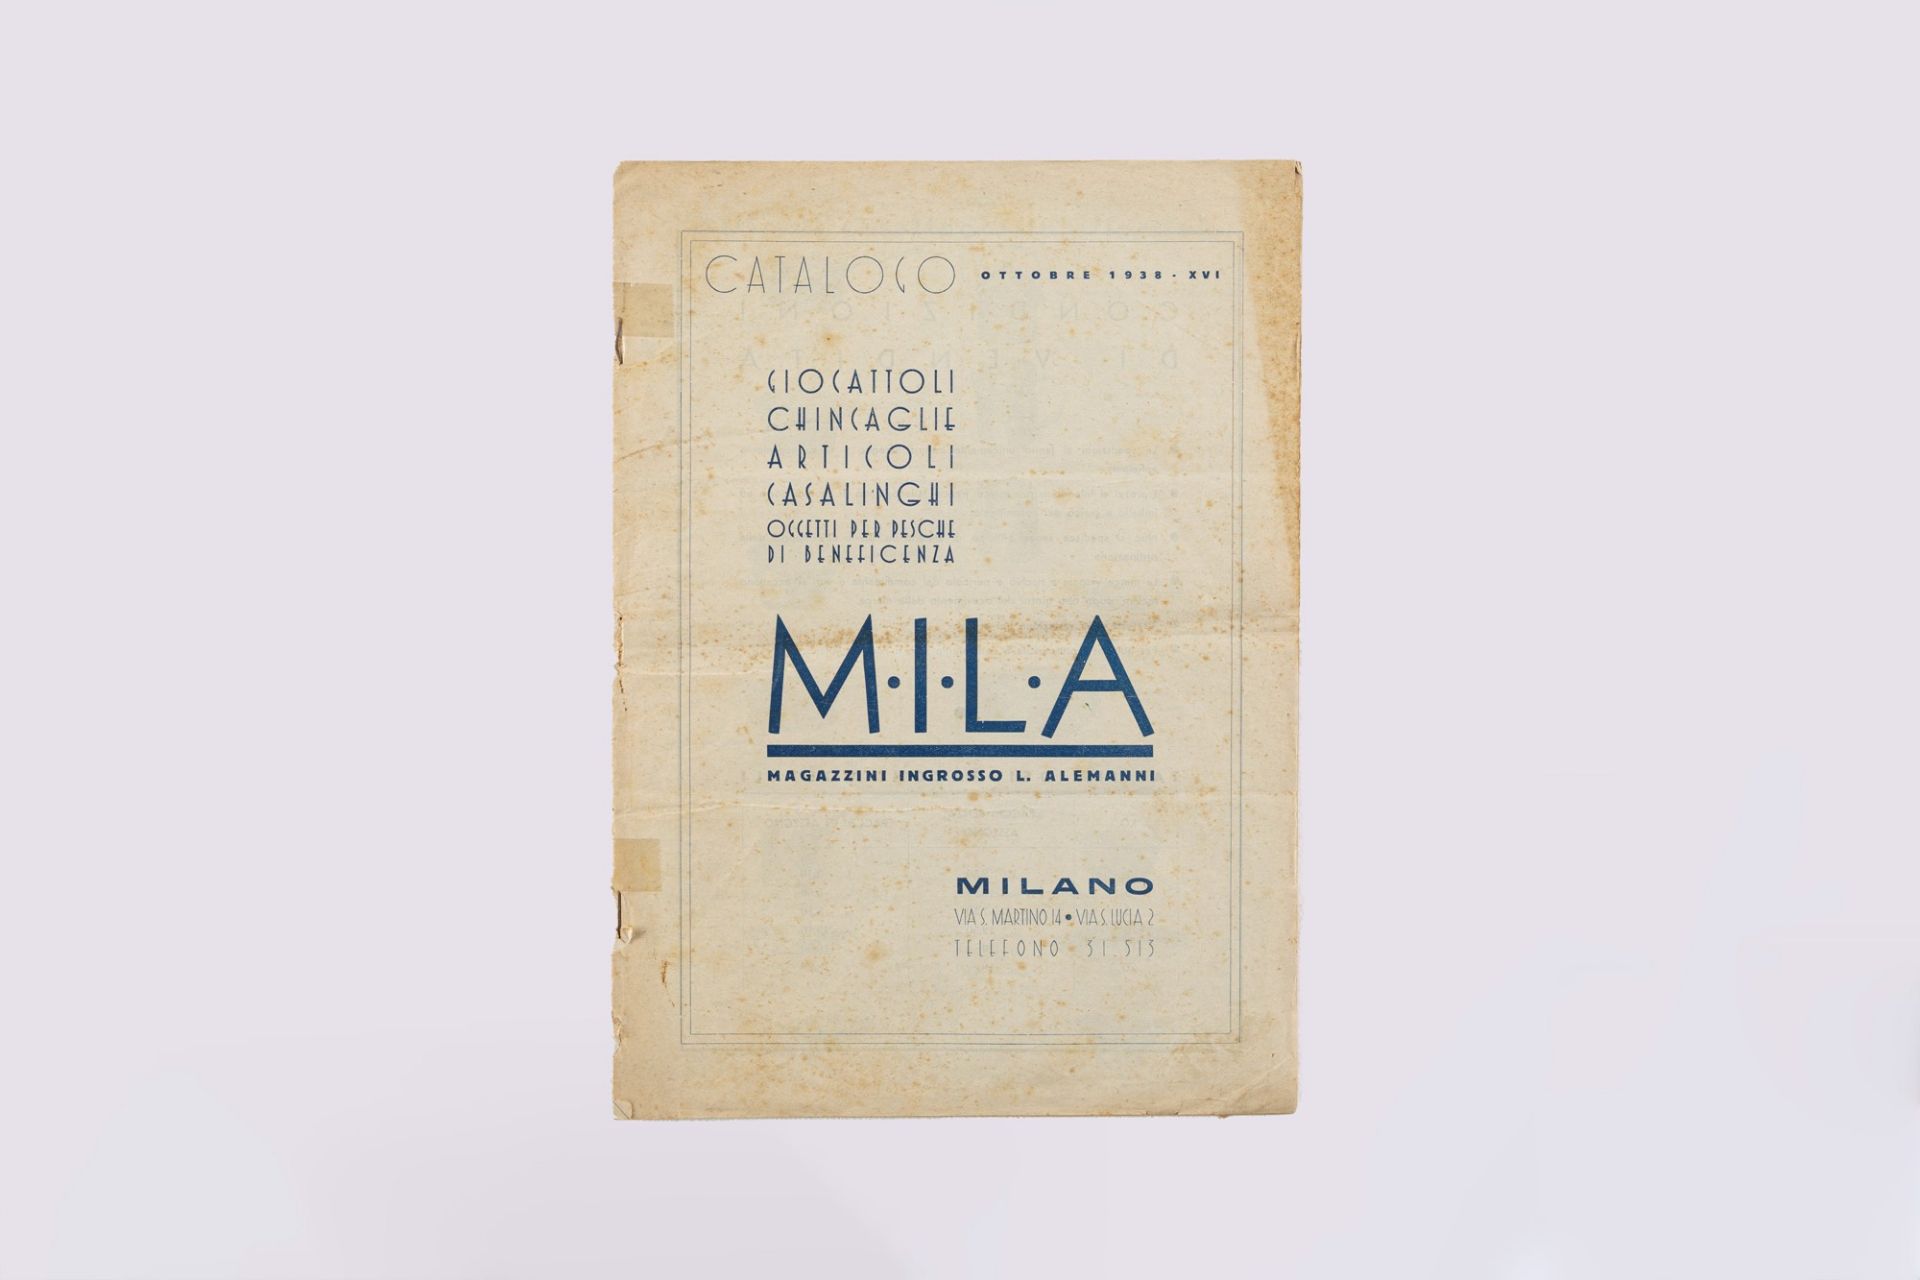 Catalogue MILA - Magazzino Ingrosso L. Alemanni, 1983